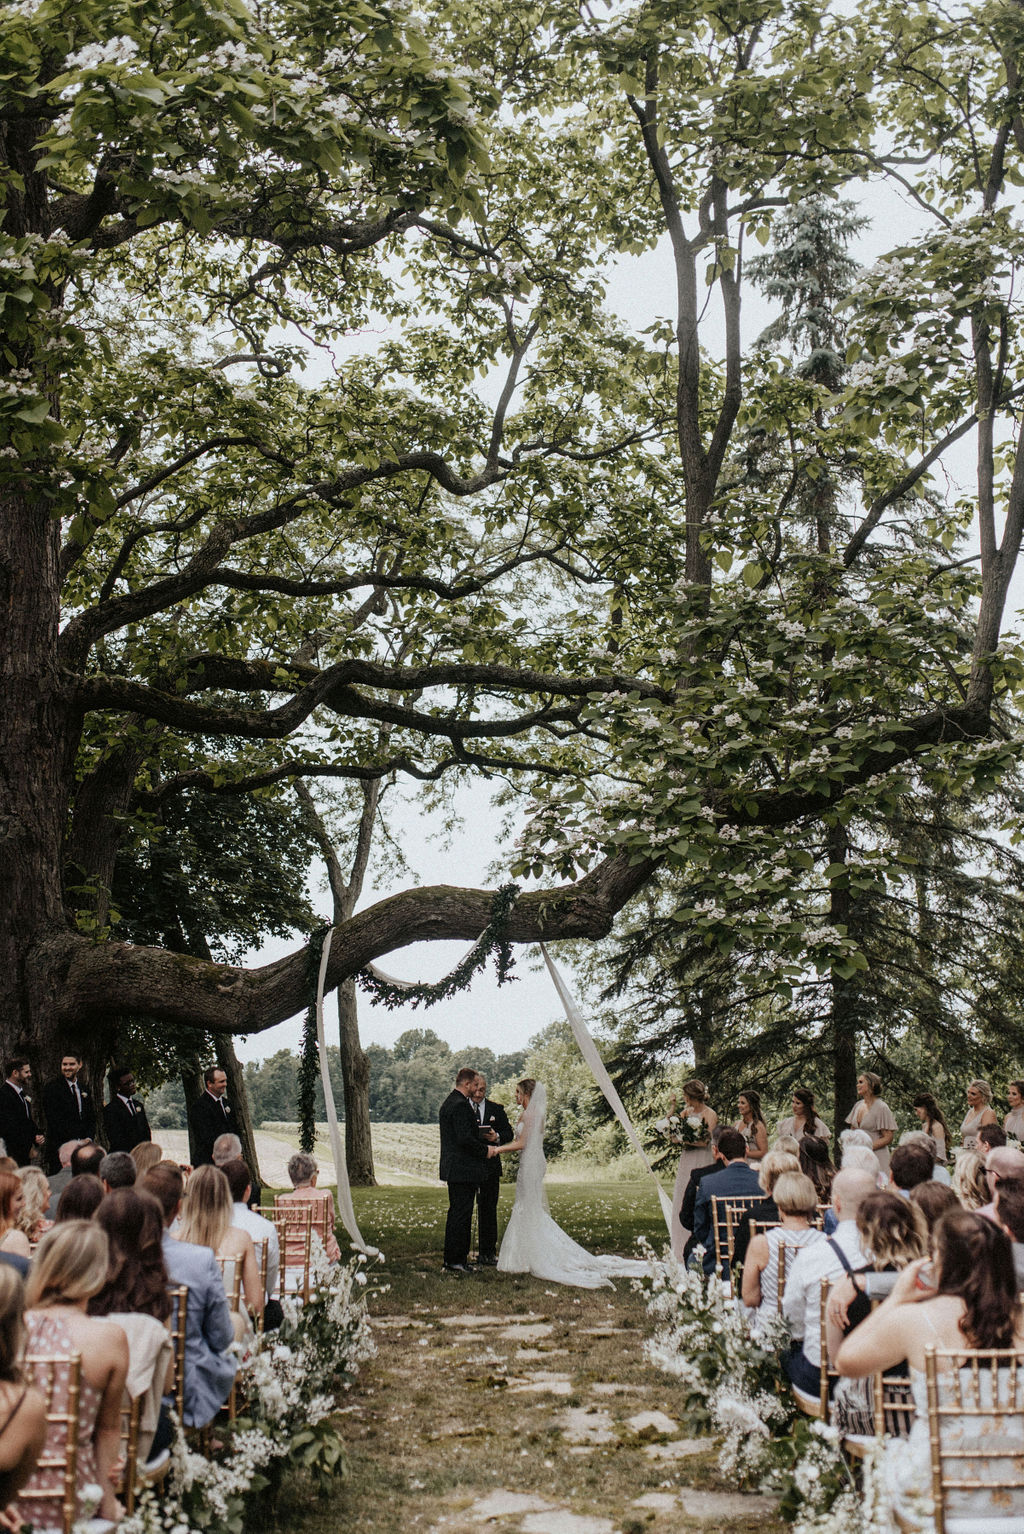 An outdoor ceremony in Berrien Springs, Michigan.